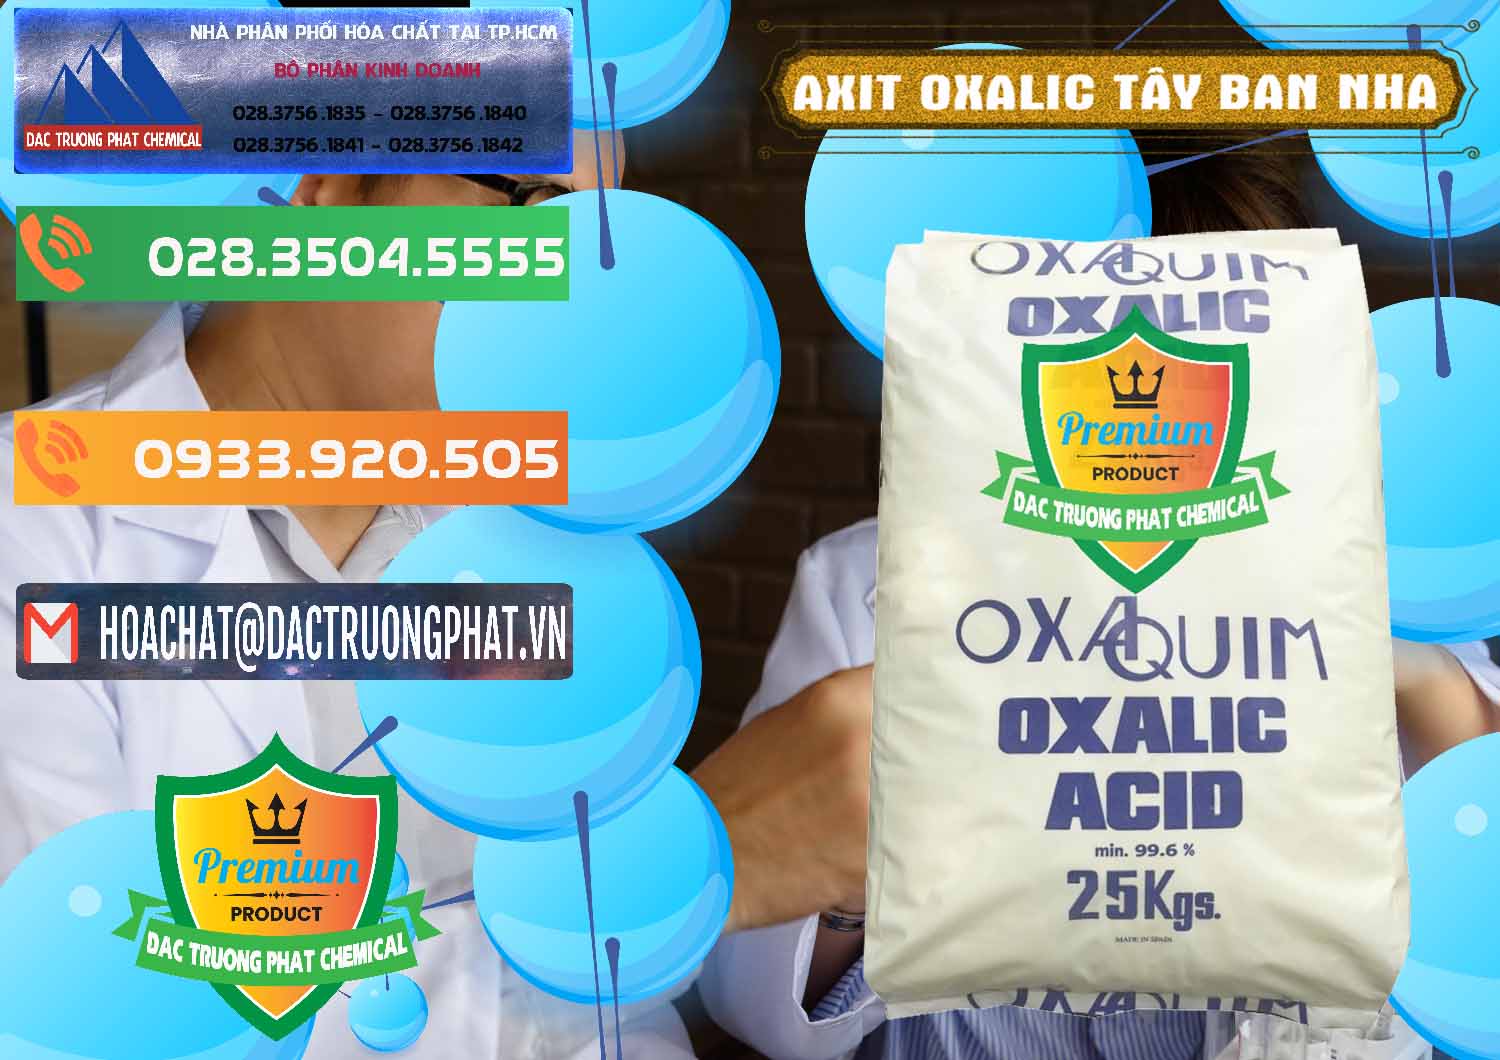 Đơn vị cung ứng ( bán ) Acid Oxalic – Axit Oxalic 99.6% Tây Ban Nha Spain - 0269 - Bán & phân phối hóa chất tại TP.HCM - hoachatxulynuoc.com.vn